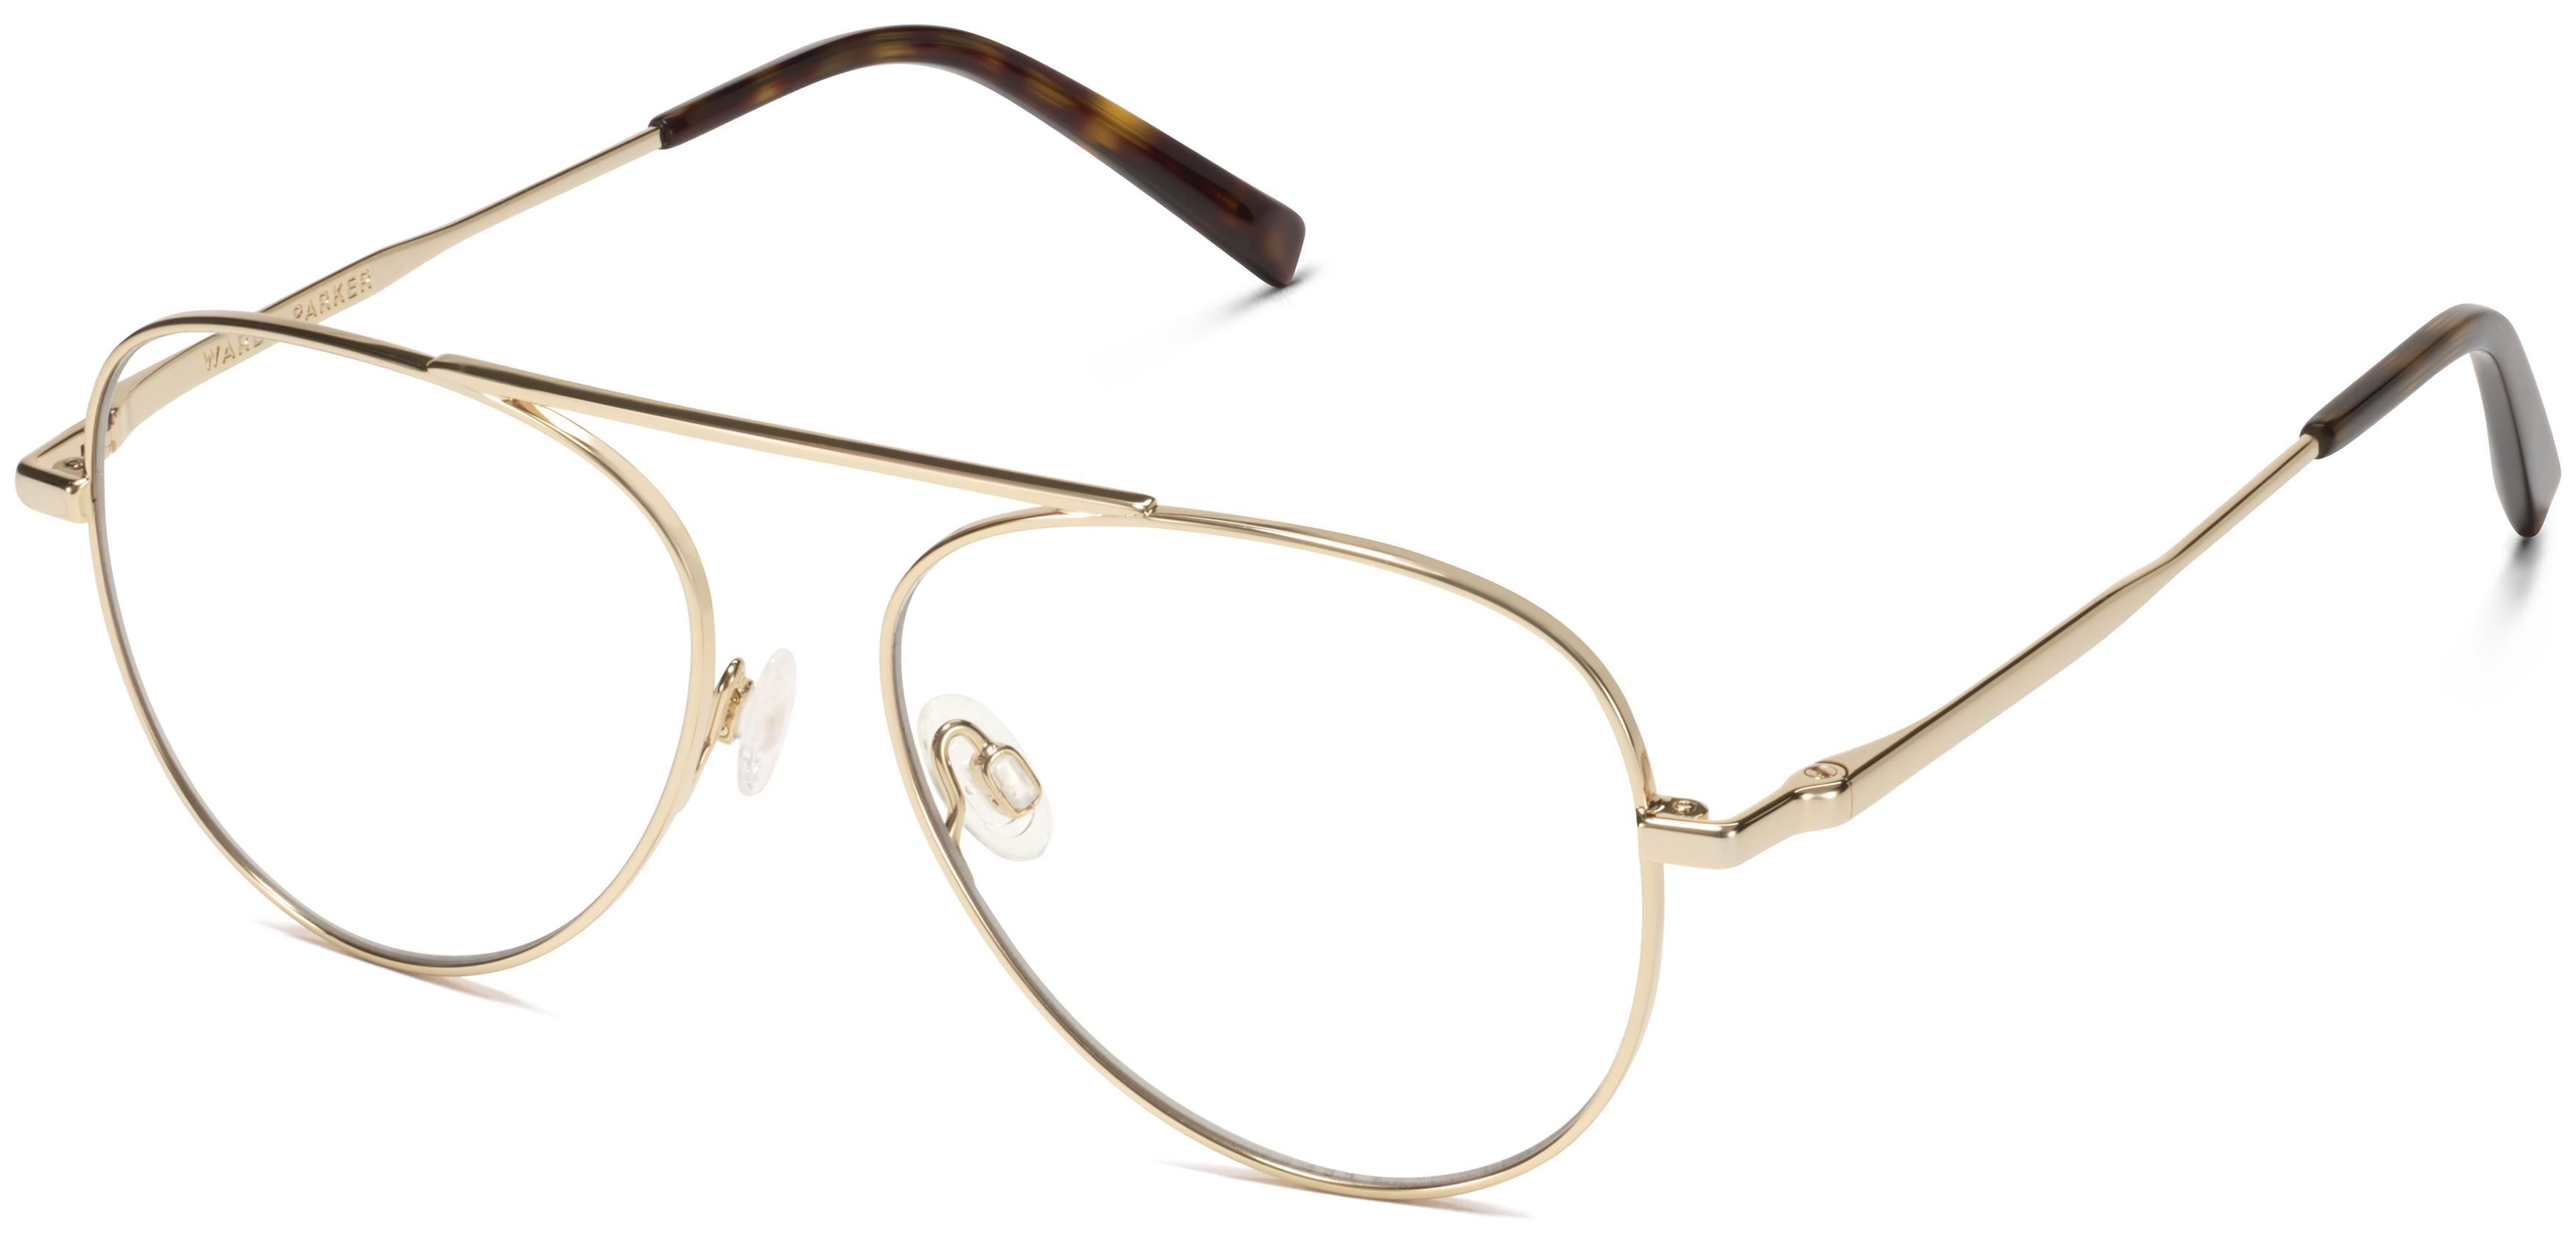 Belmar Eyeglasses in Polished Gold | Warby Parker | Warby Parker (US)